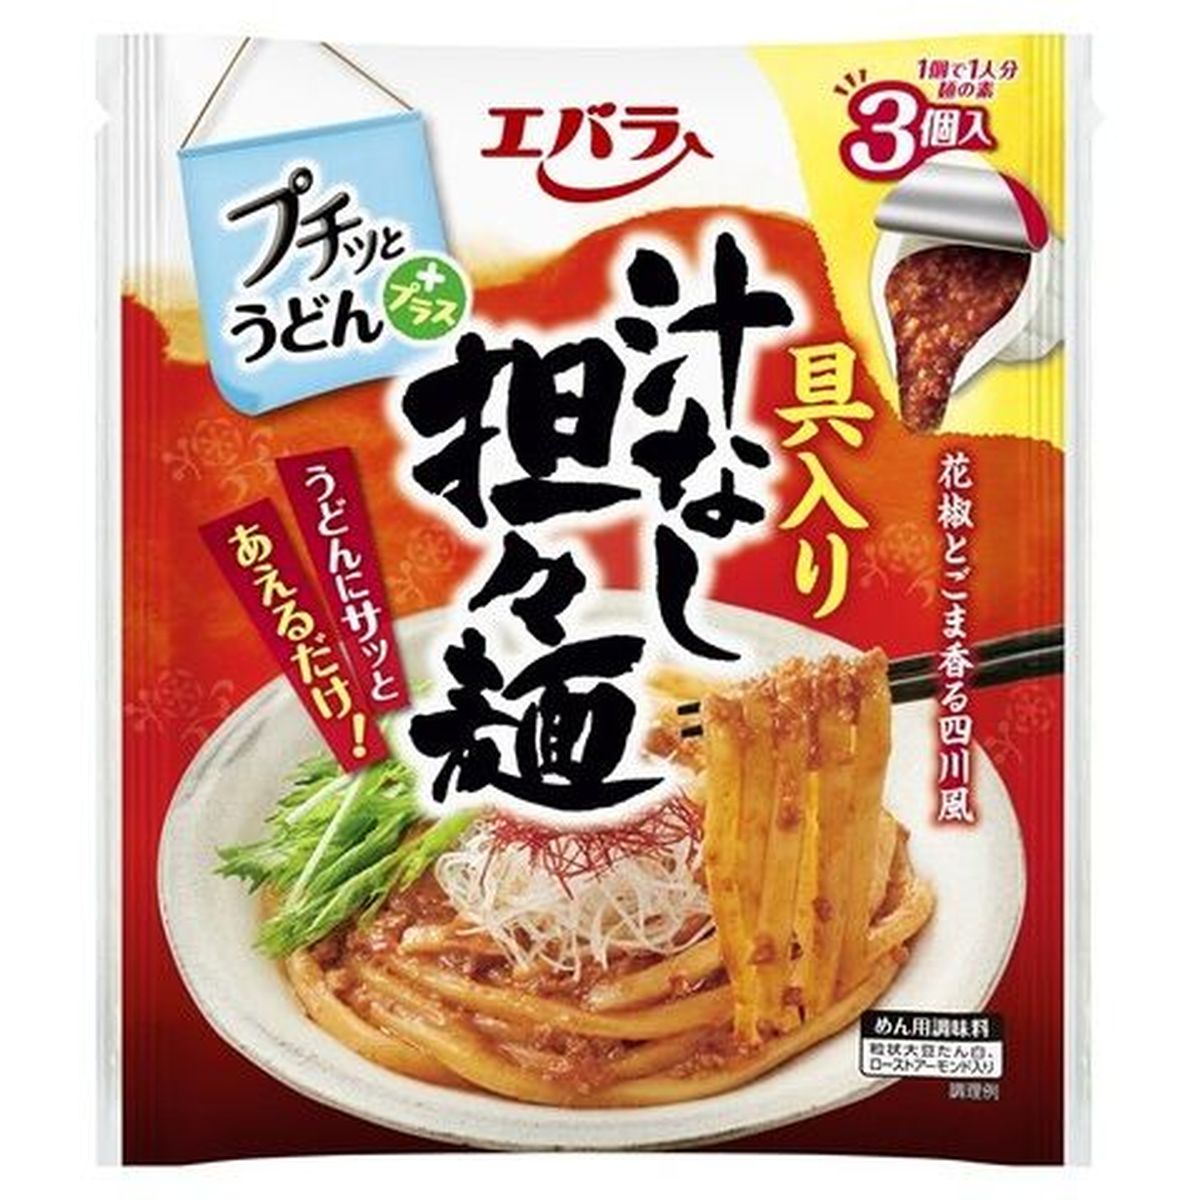 【12個入リ】エバラ プチットプラス具入リ汁ナシ担々麺 120g